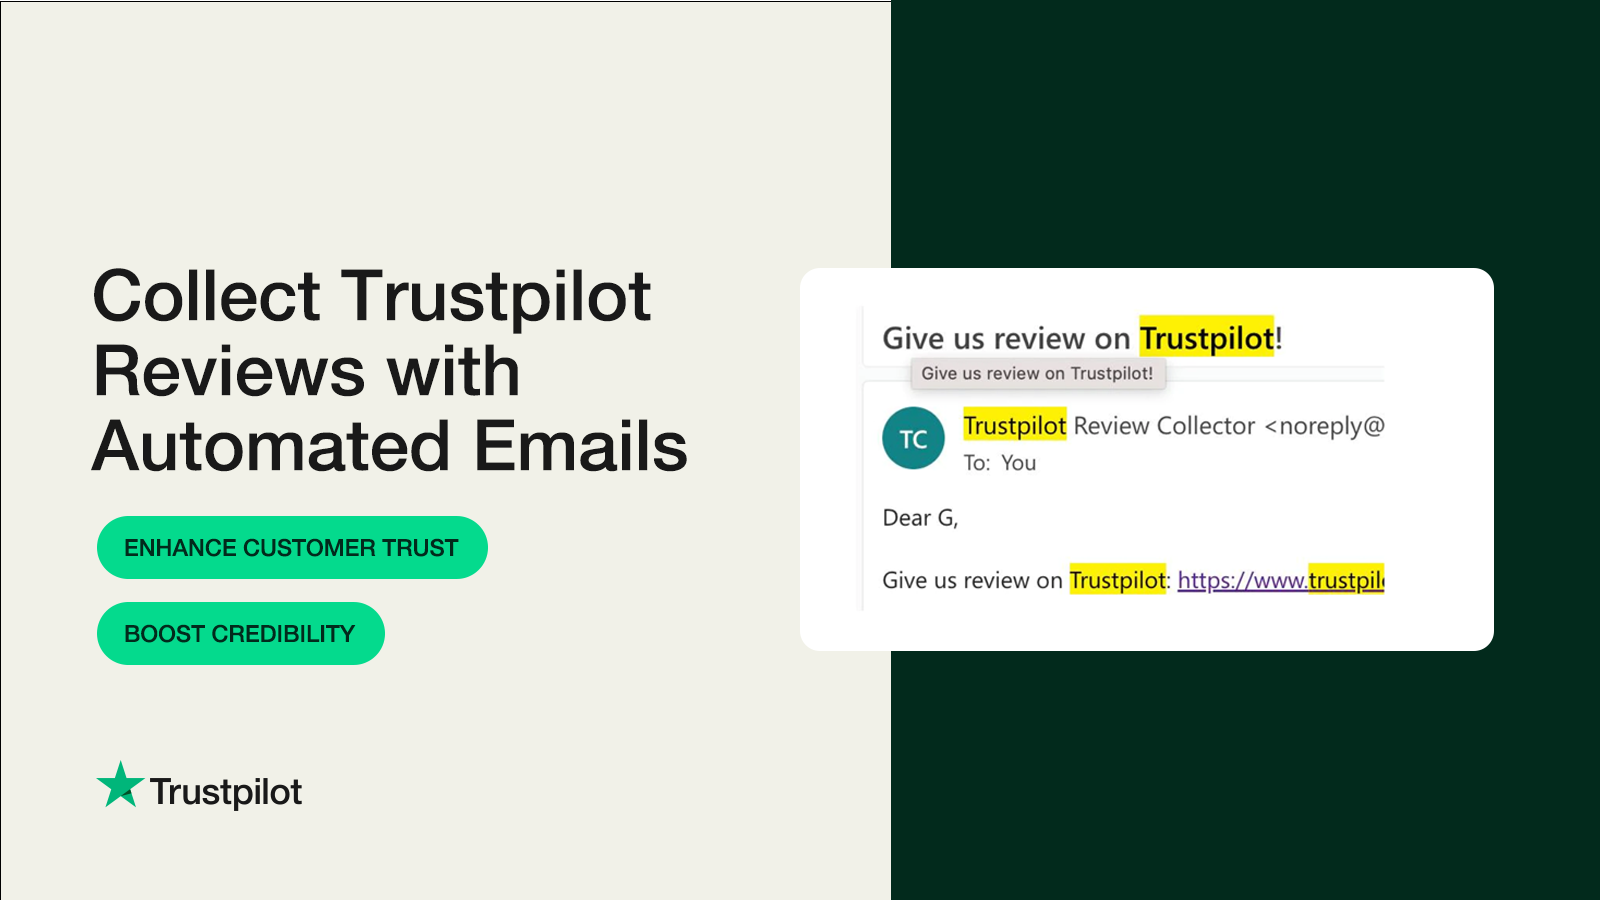 Indsaml Trustpilot anmeldelser med automatiserede e-mails